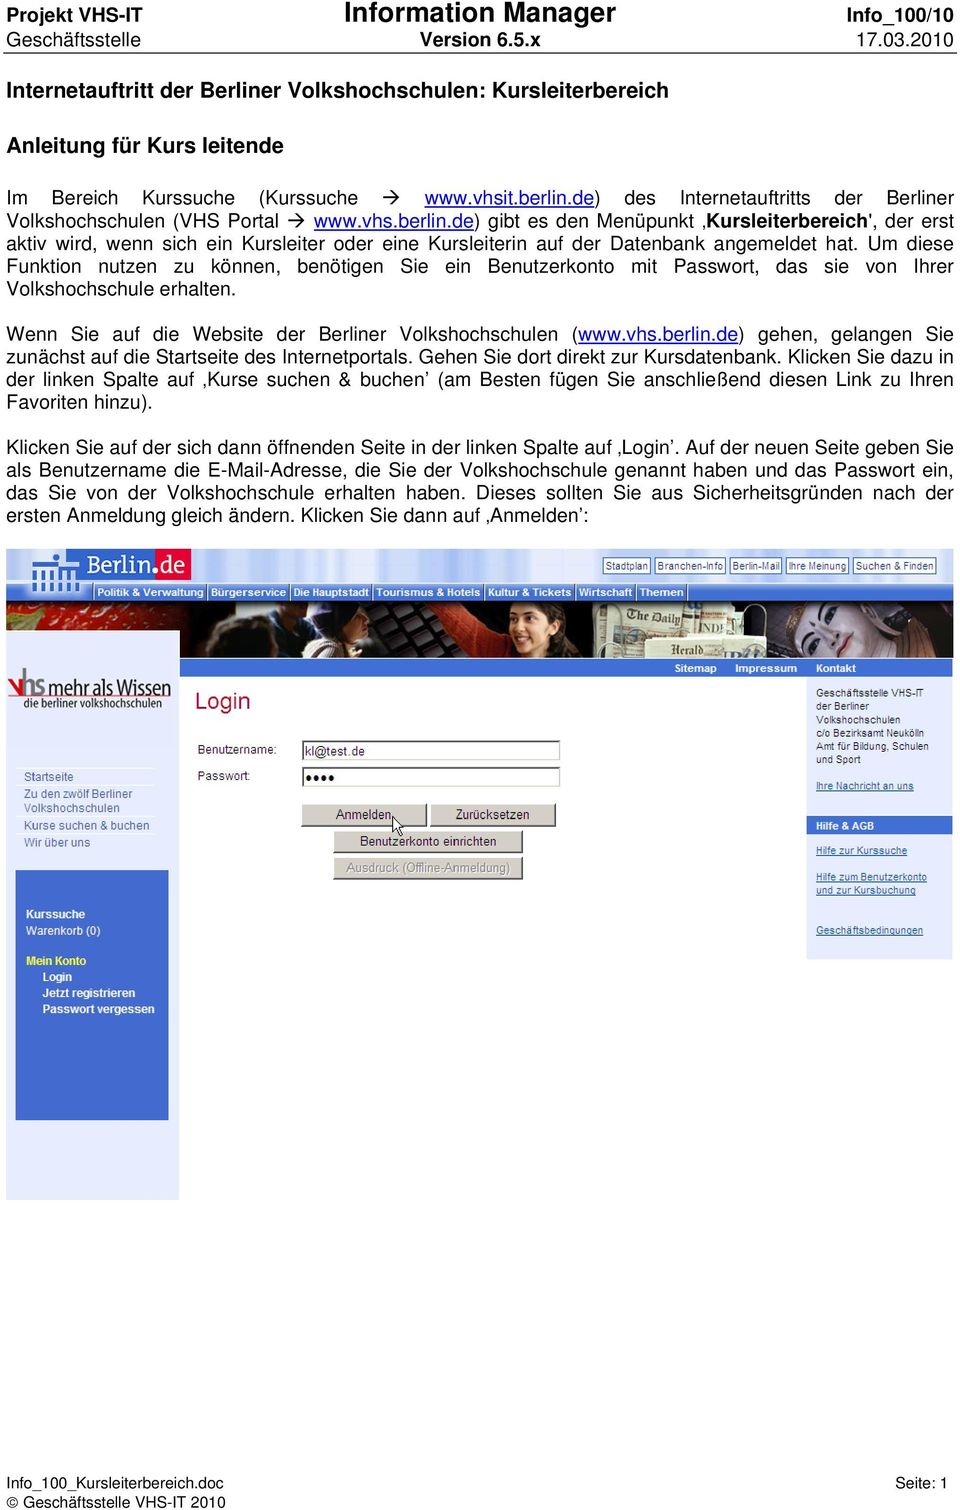 de) des Internetauftritts der Berliner Volkshochschulen (VHS Portal www.vhs.berlin.